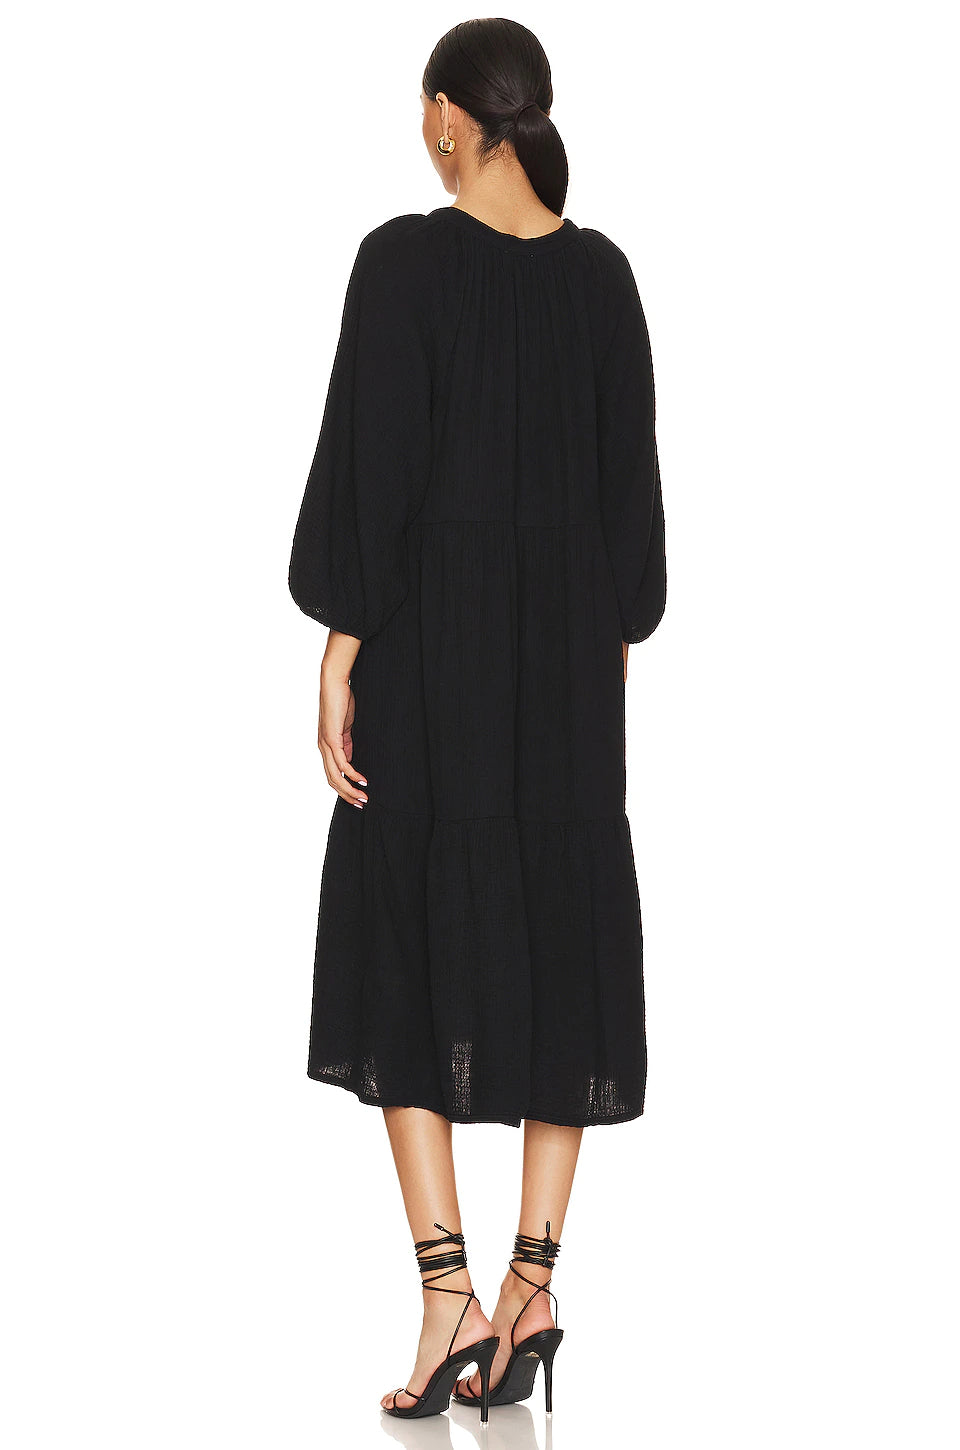 Imani Dress in Black